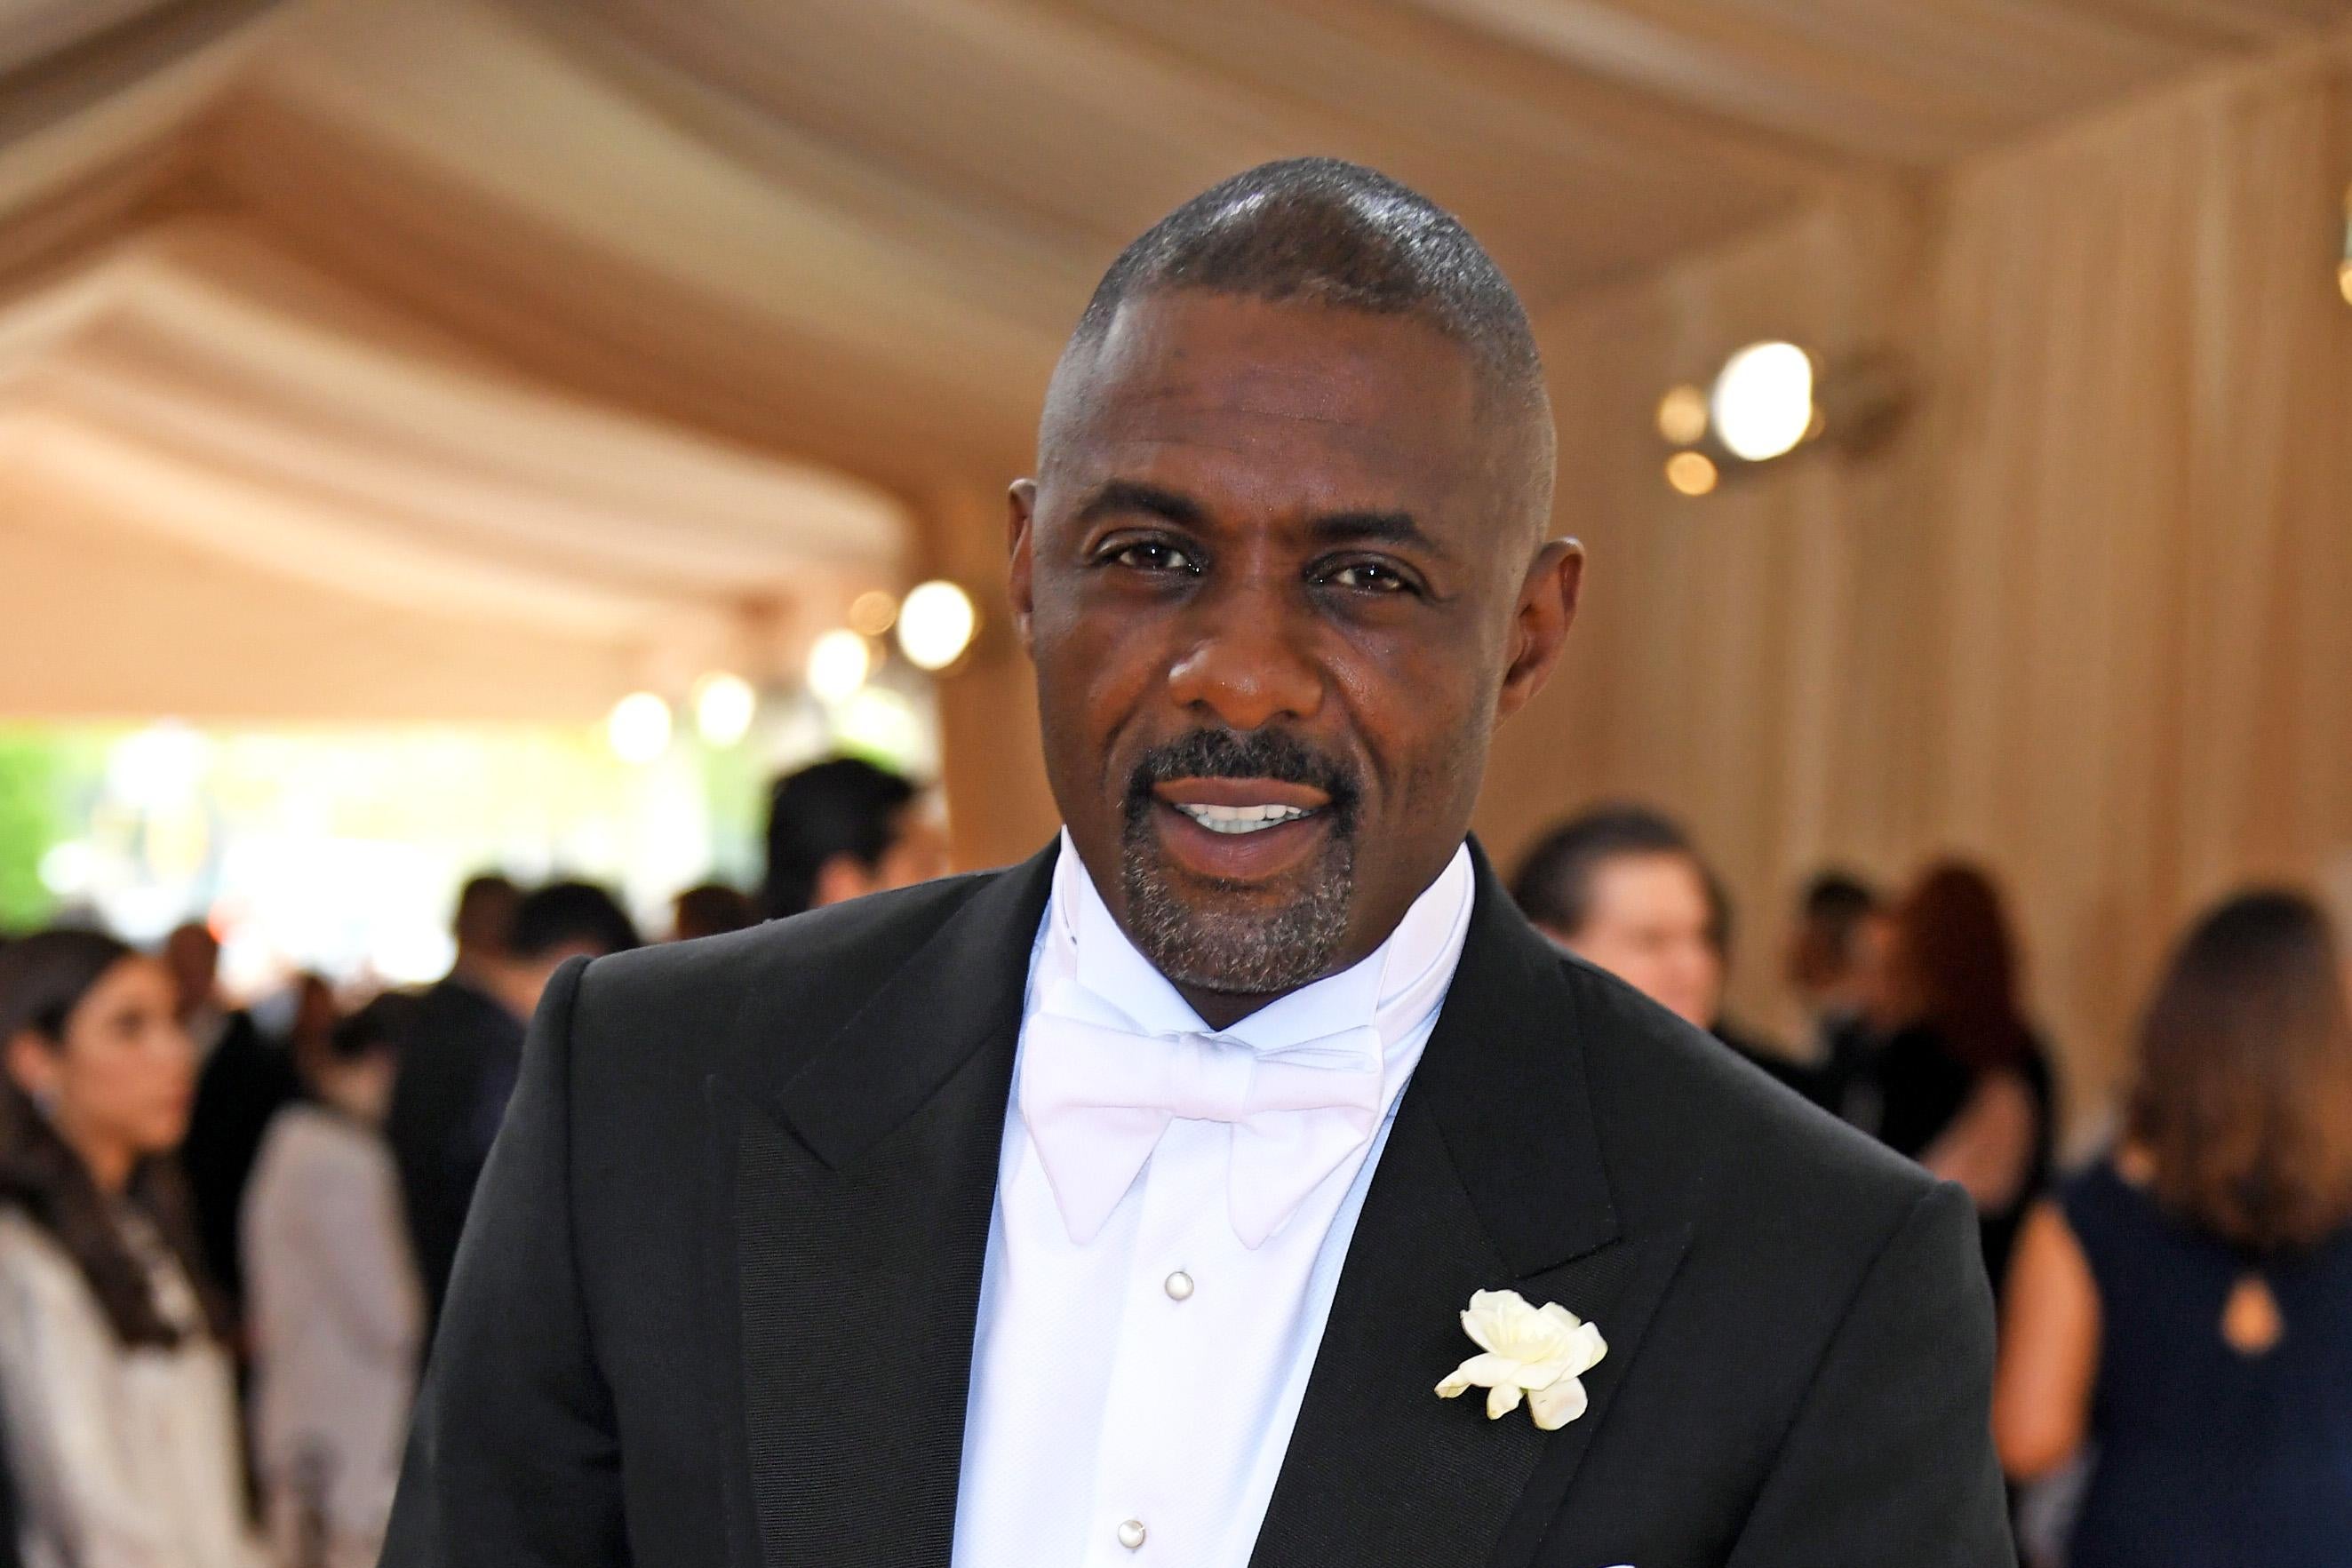 Idris Elba in a tuxedo.